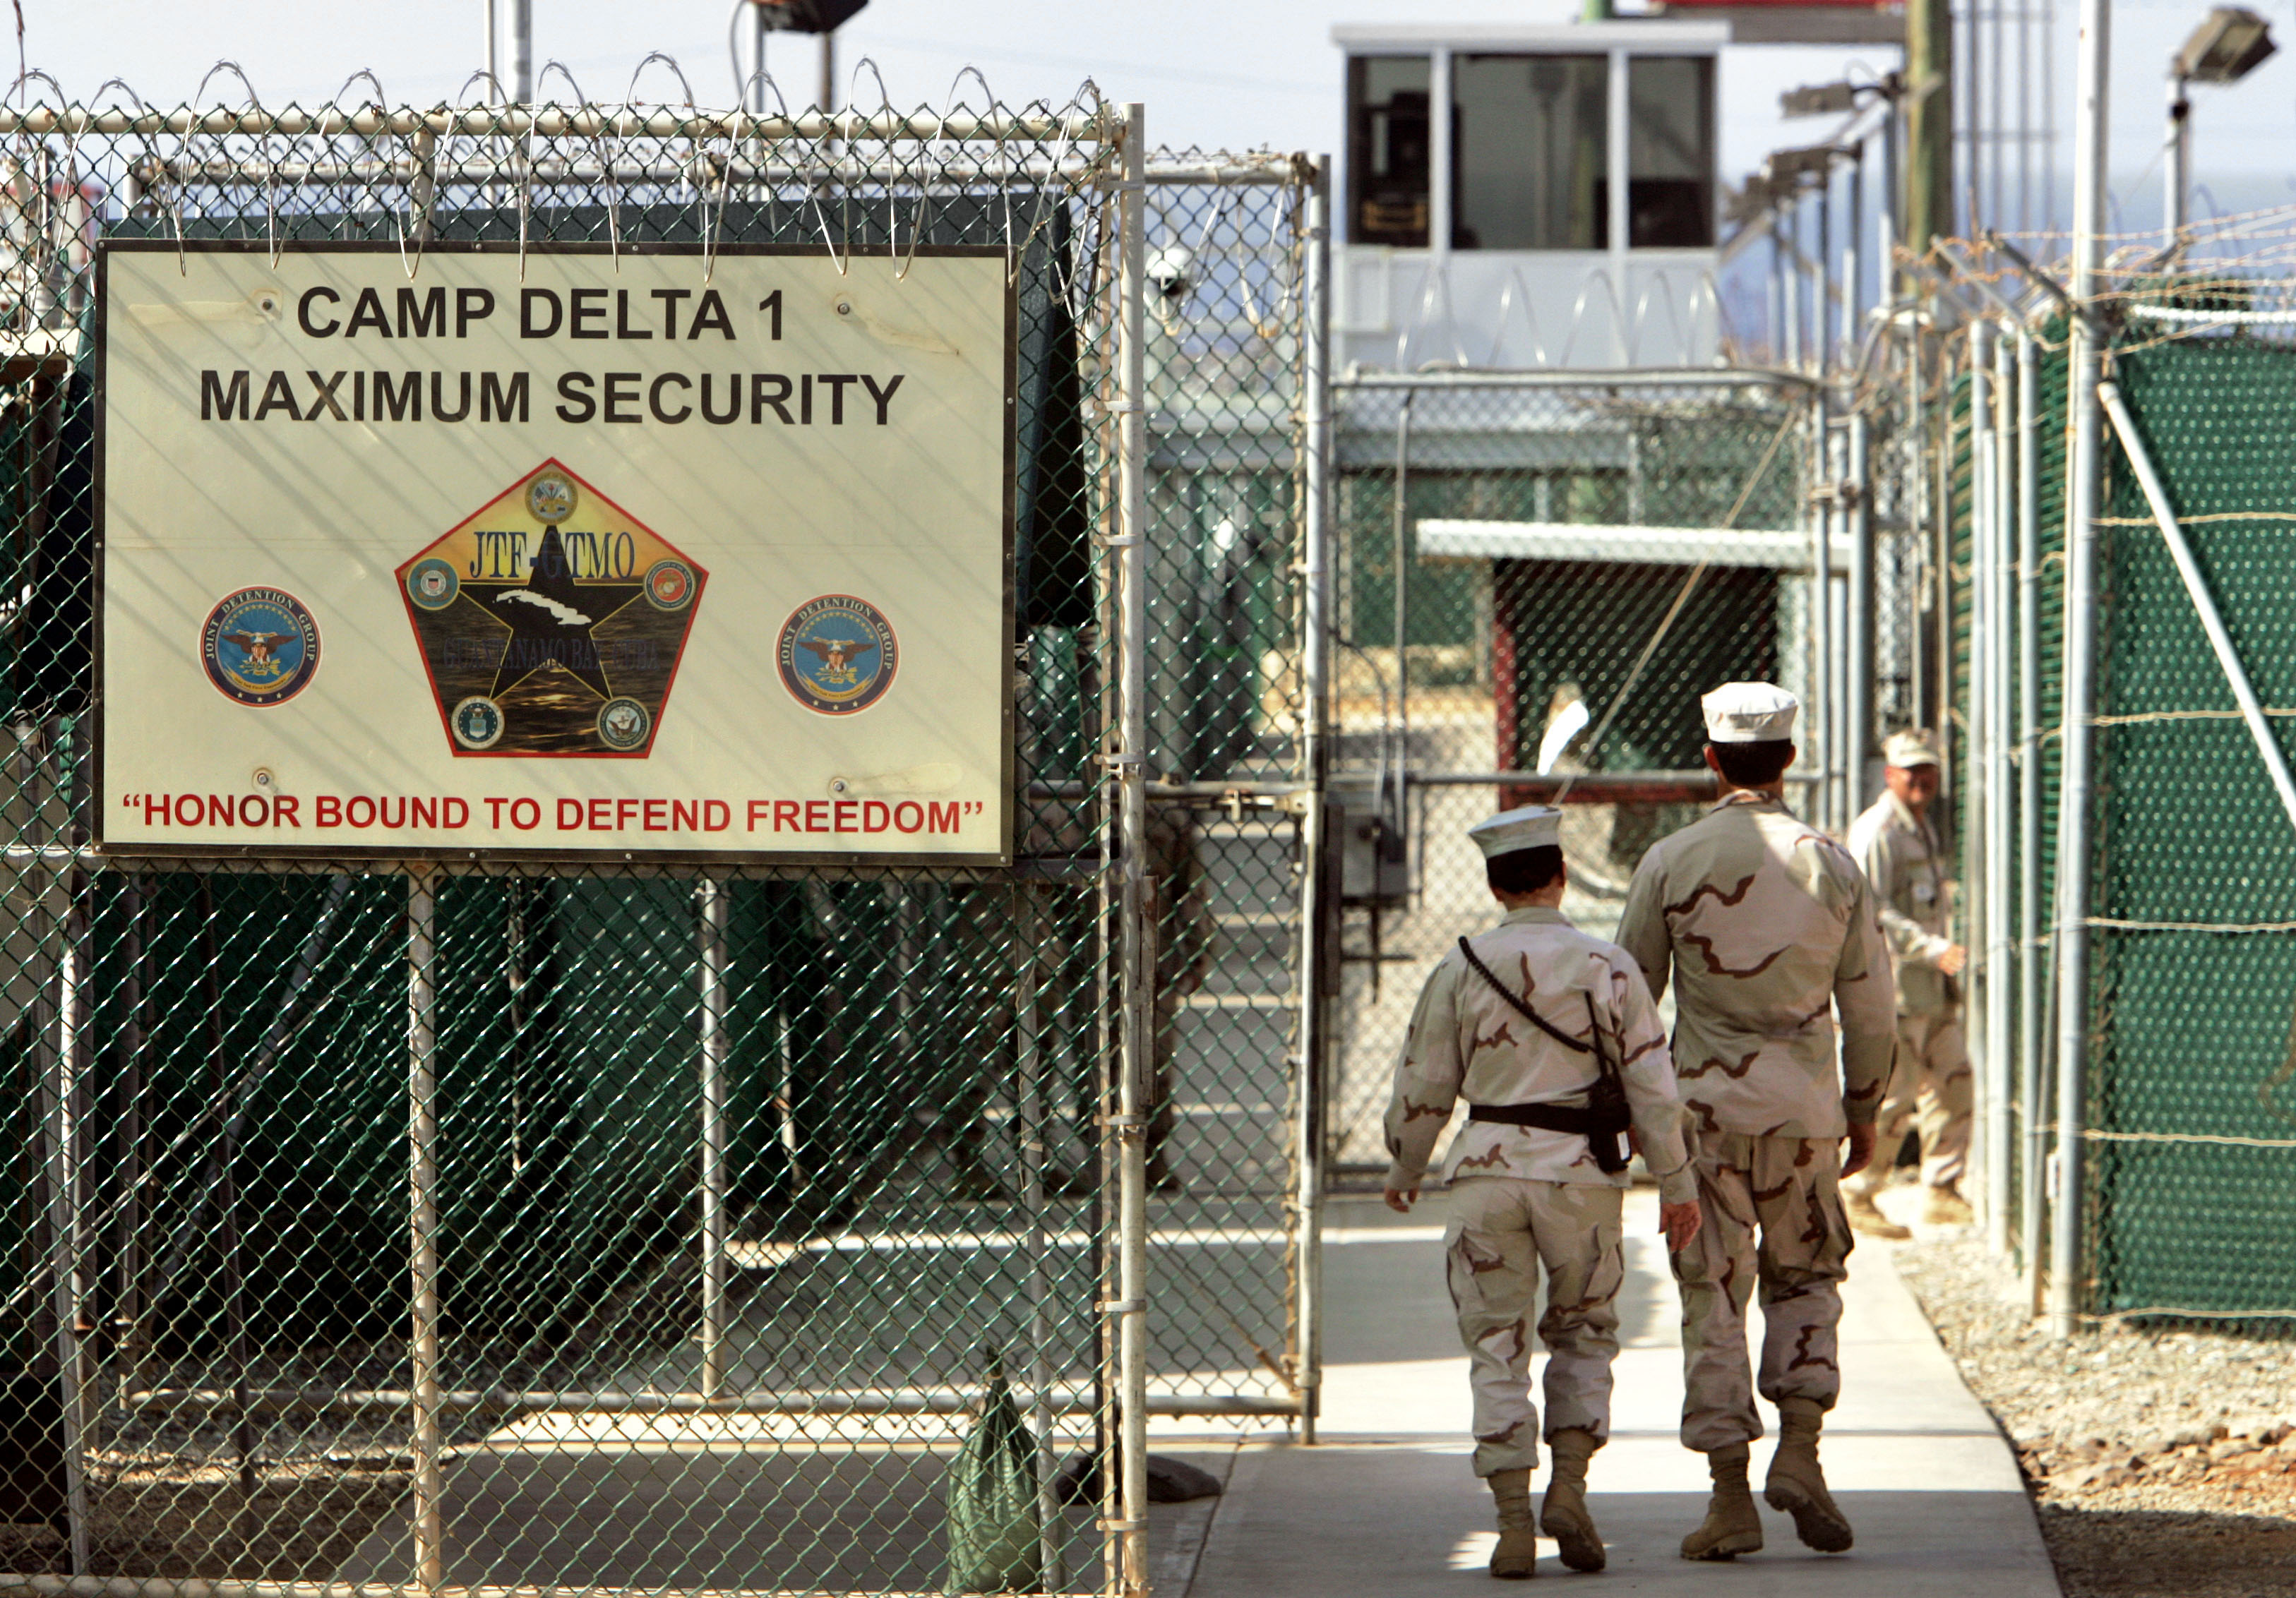 2002 hade Guantanamofängelset plats för 100 fångar. Fyra år senare, 2006 hade anläggningen byggts ut för att göra plats för ytterligare 400 fångar. Samtidigt kunde man alltså ha 500 fångar. 